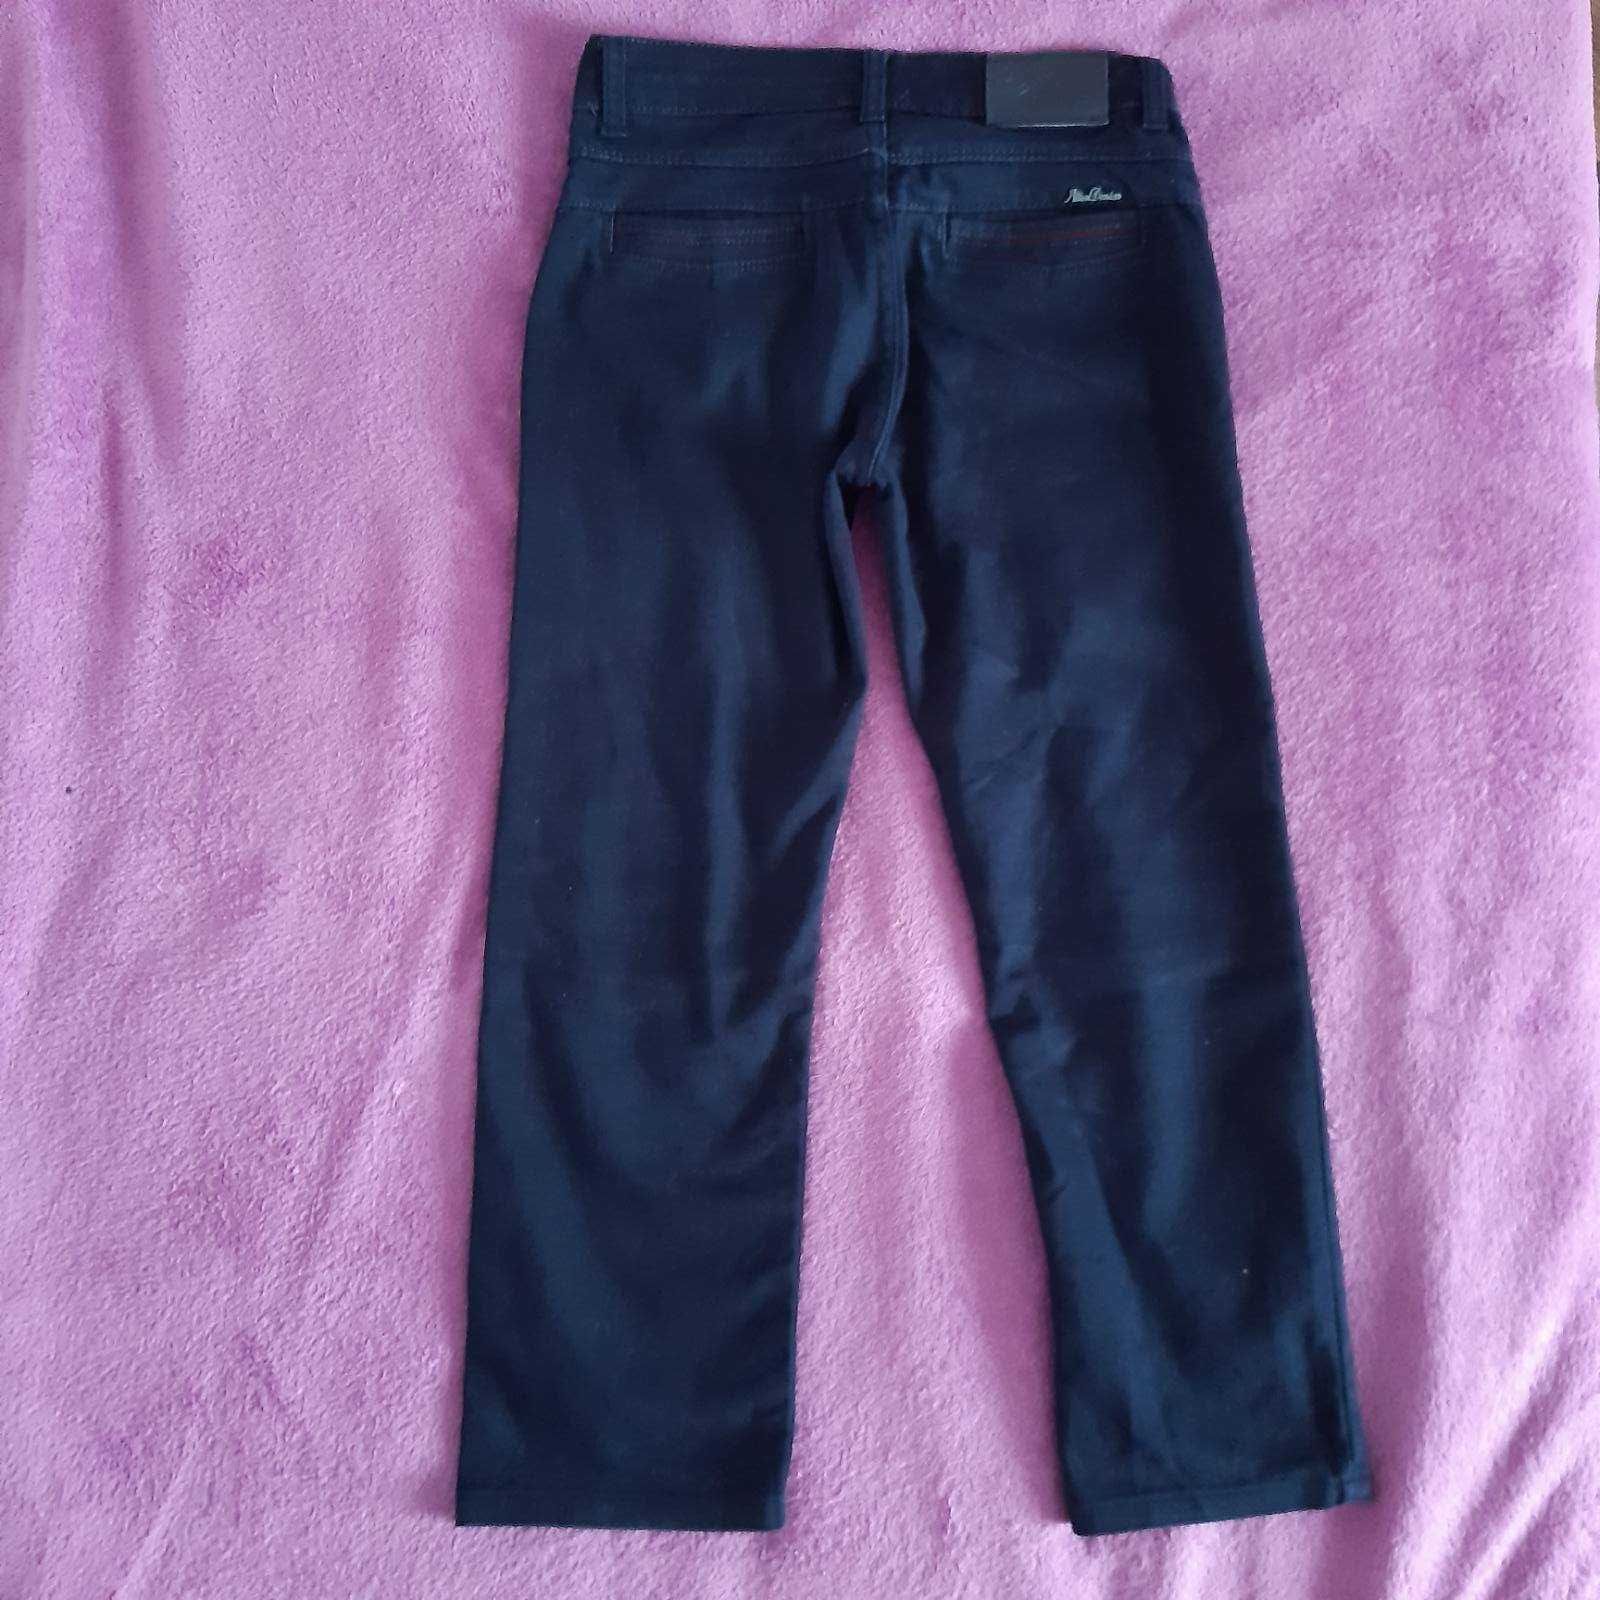 котоновые брюки на мальчика в школу синие 134-140 размер